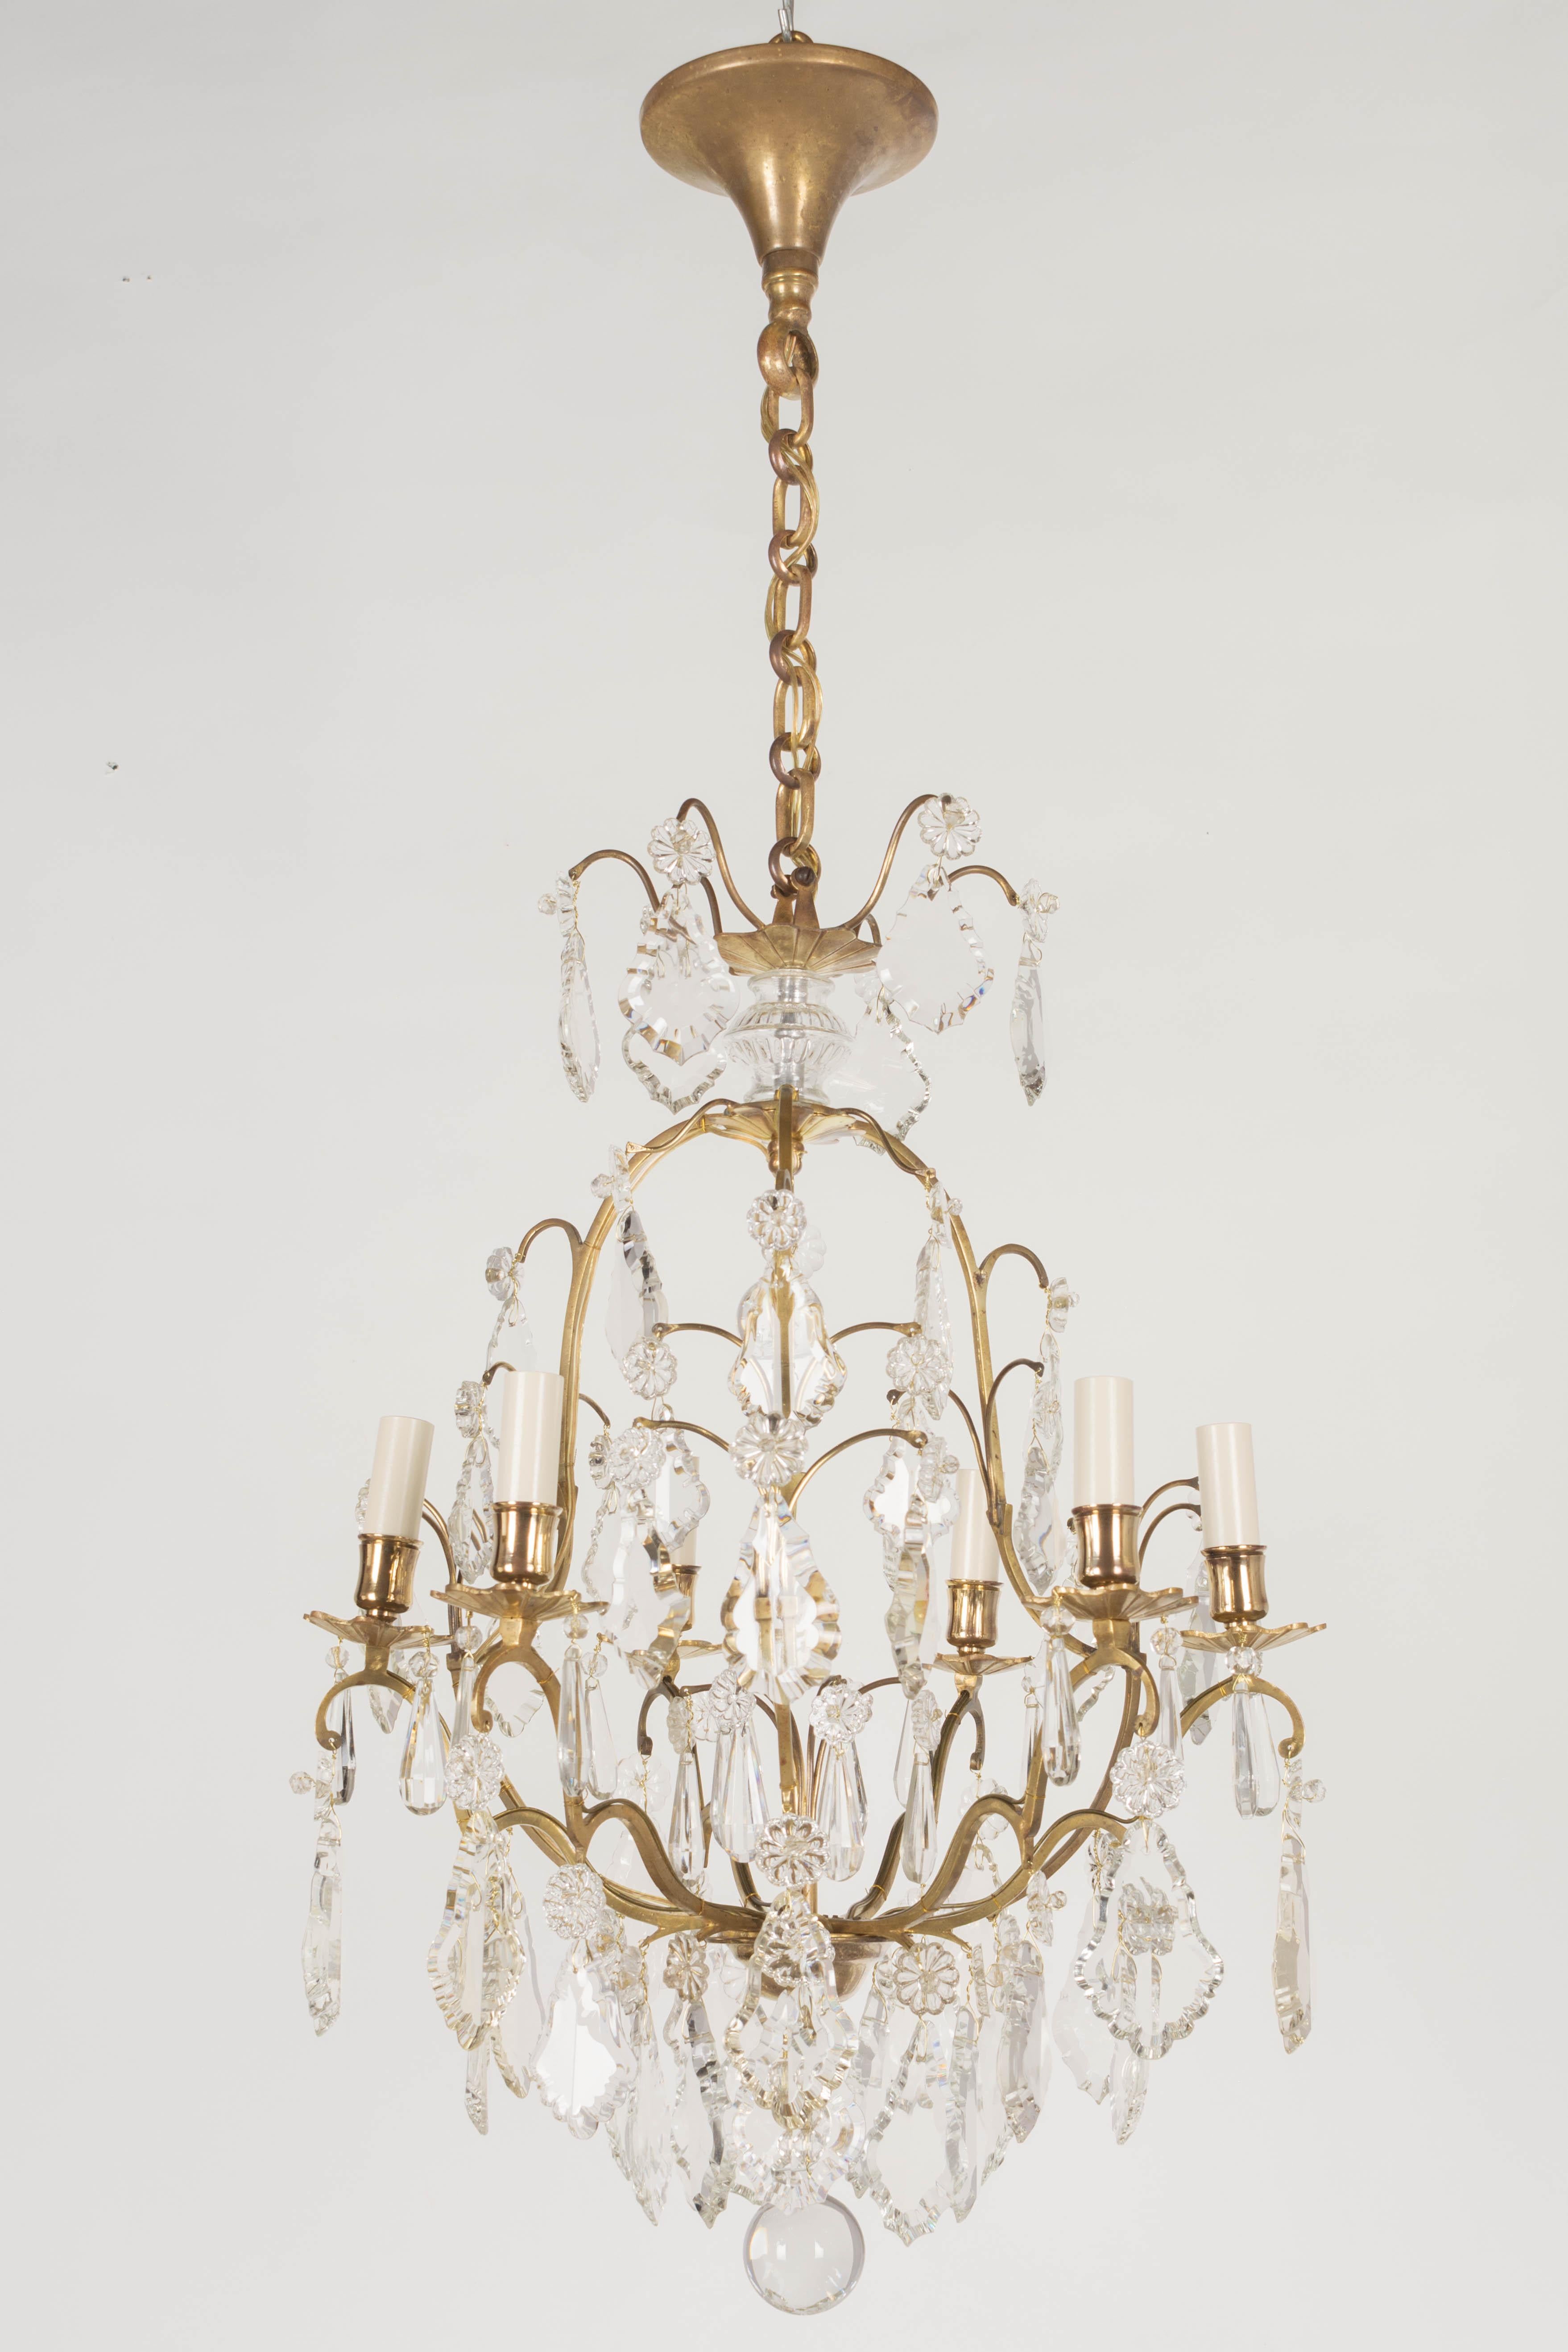 Lustre français de style Louis XV à six lumières avec un assortiment de prismes et de pendentifs en cristal avec des rosettes, une colonne centrale et des sphères en cristal. Le cadre de la cage à oiseaux en laiton massif et les bobèches en laiton